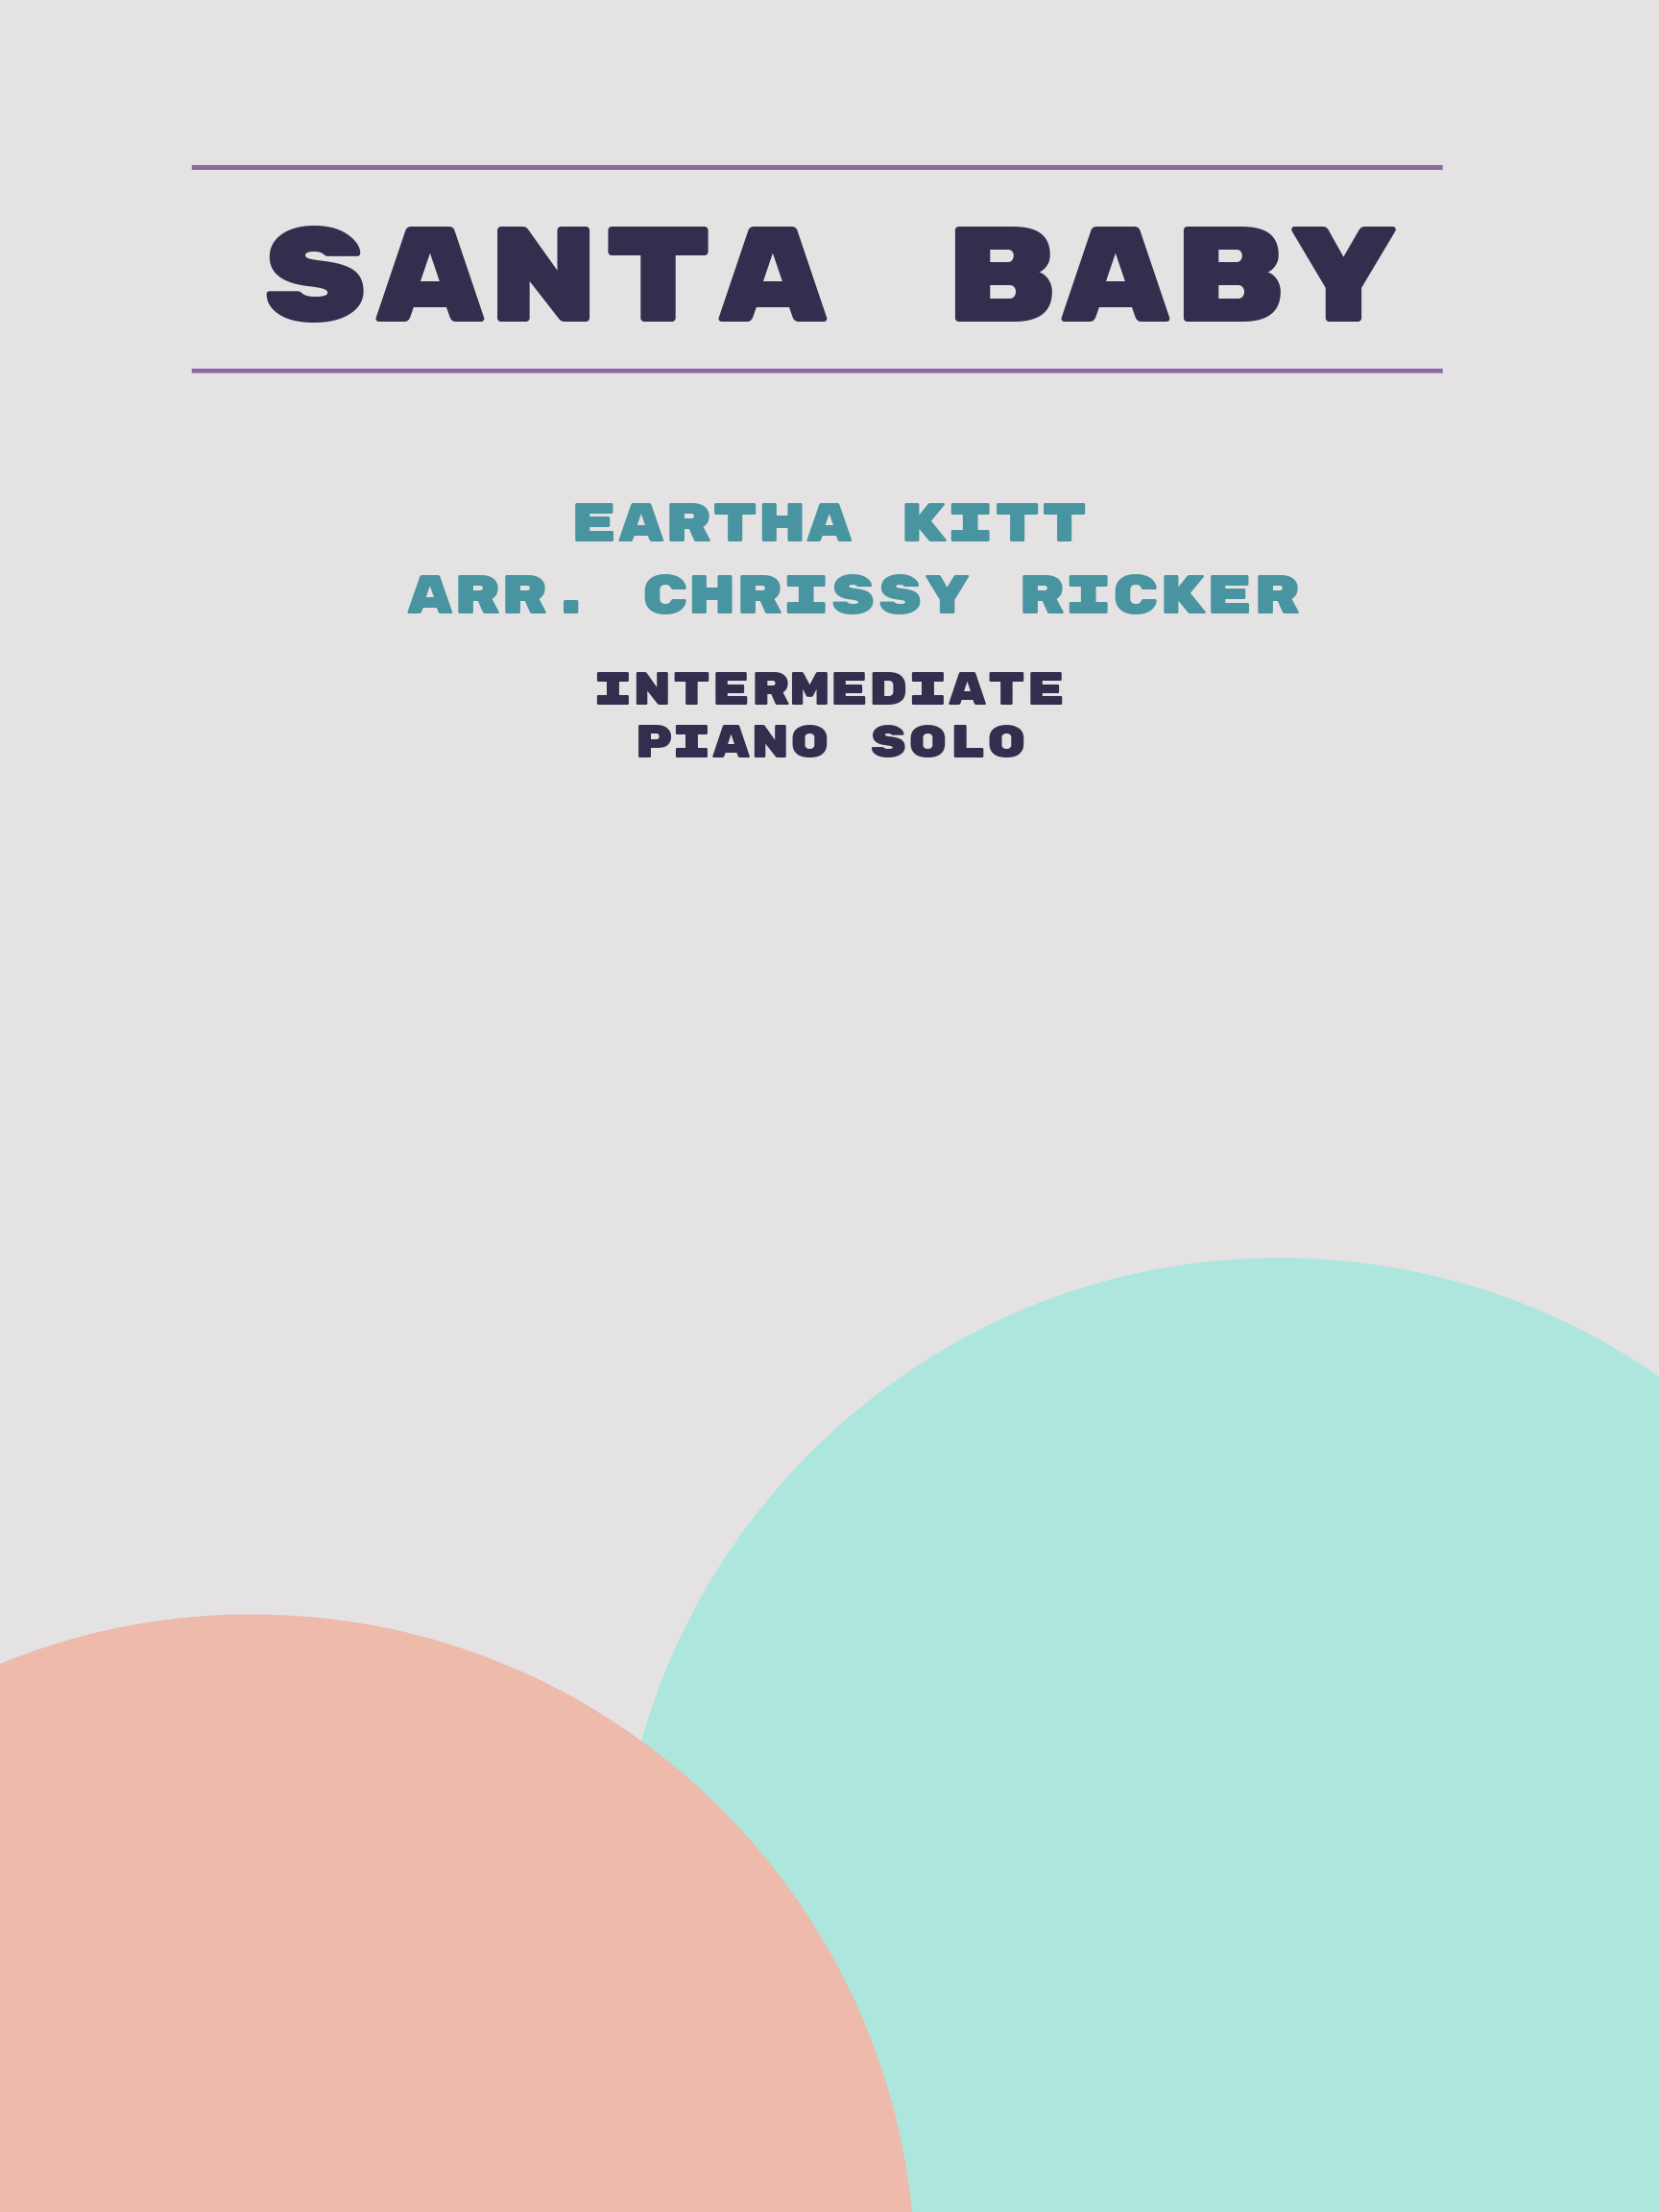 Santa Baby by Eartha Kitt